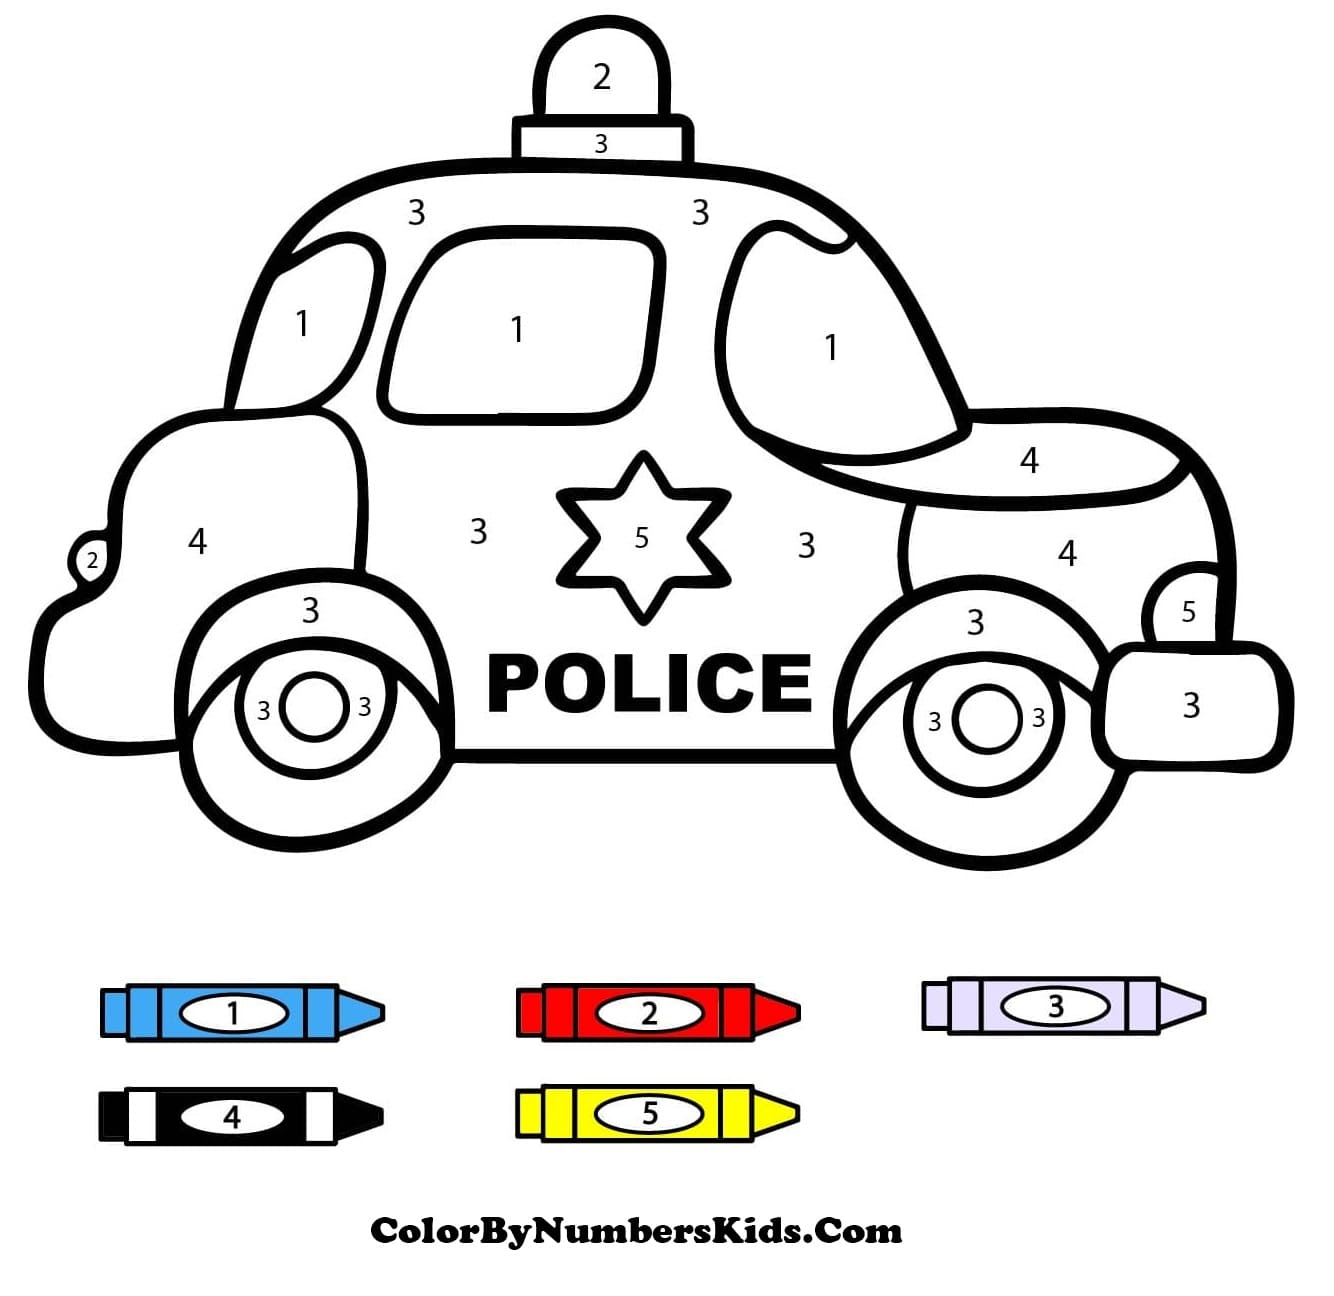 Police Car Color By Number Worksheet